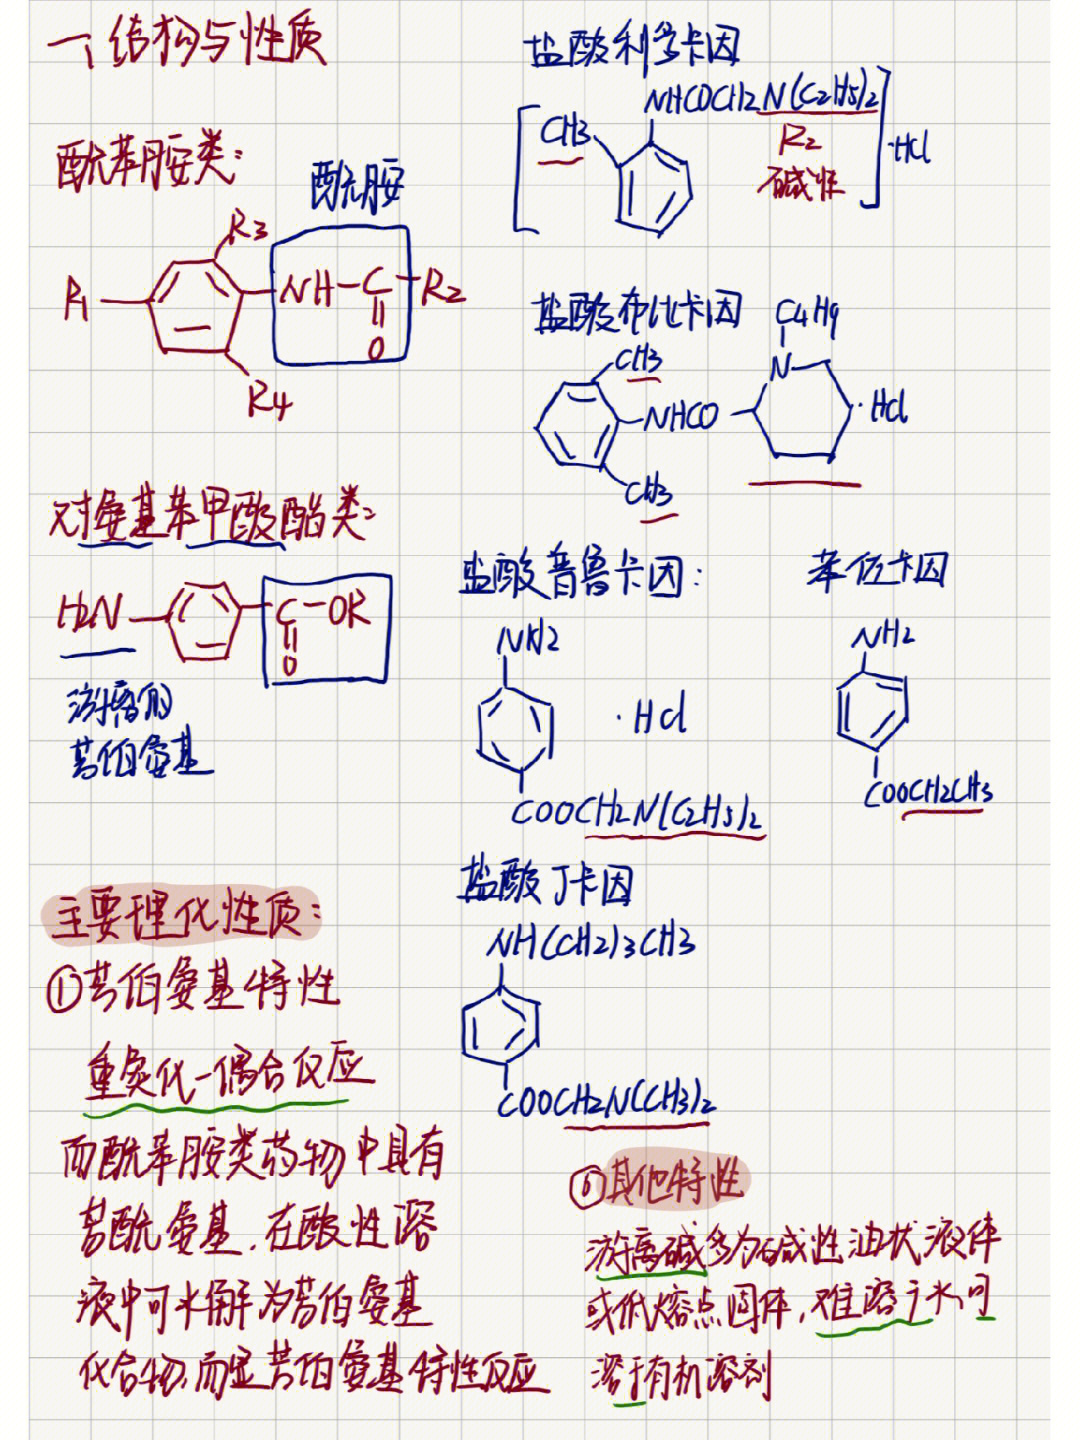 期末考试重点:16615理化性质:酰苯胺水解为芳伯氨基→重氮化偶合